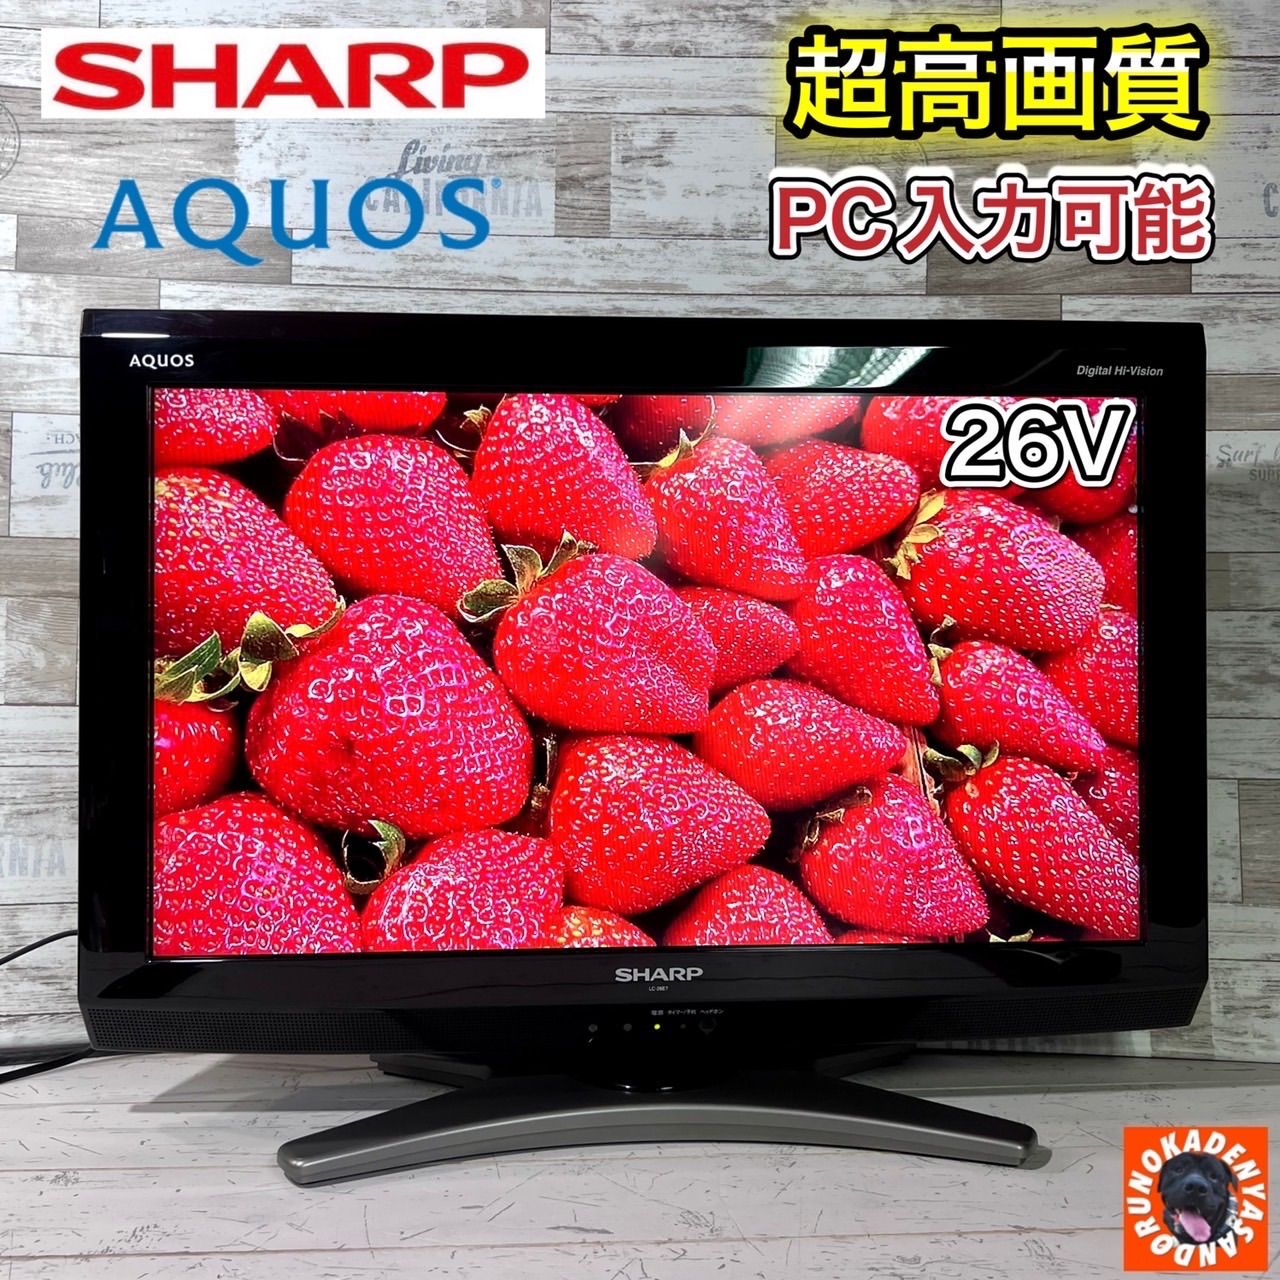 すぐ見れる‼️】SHARP AQUOS 液晶テレビ 26型✨ PC入力可能⭕ - ドルの